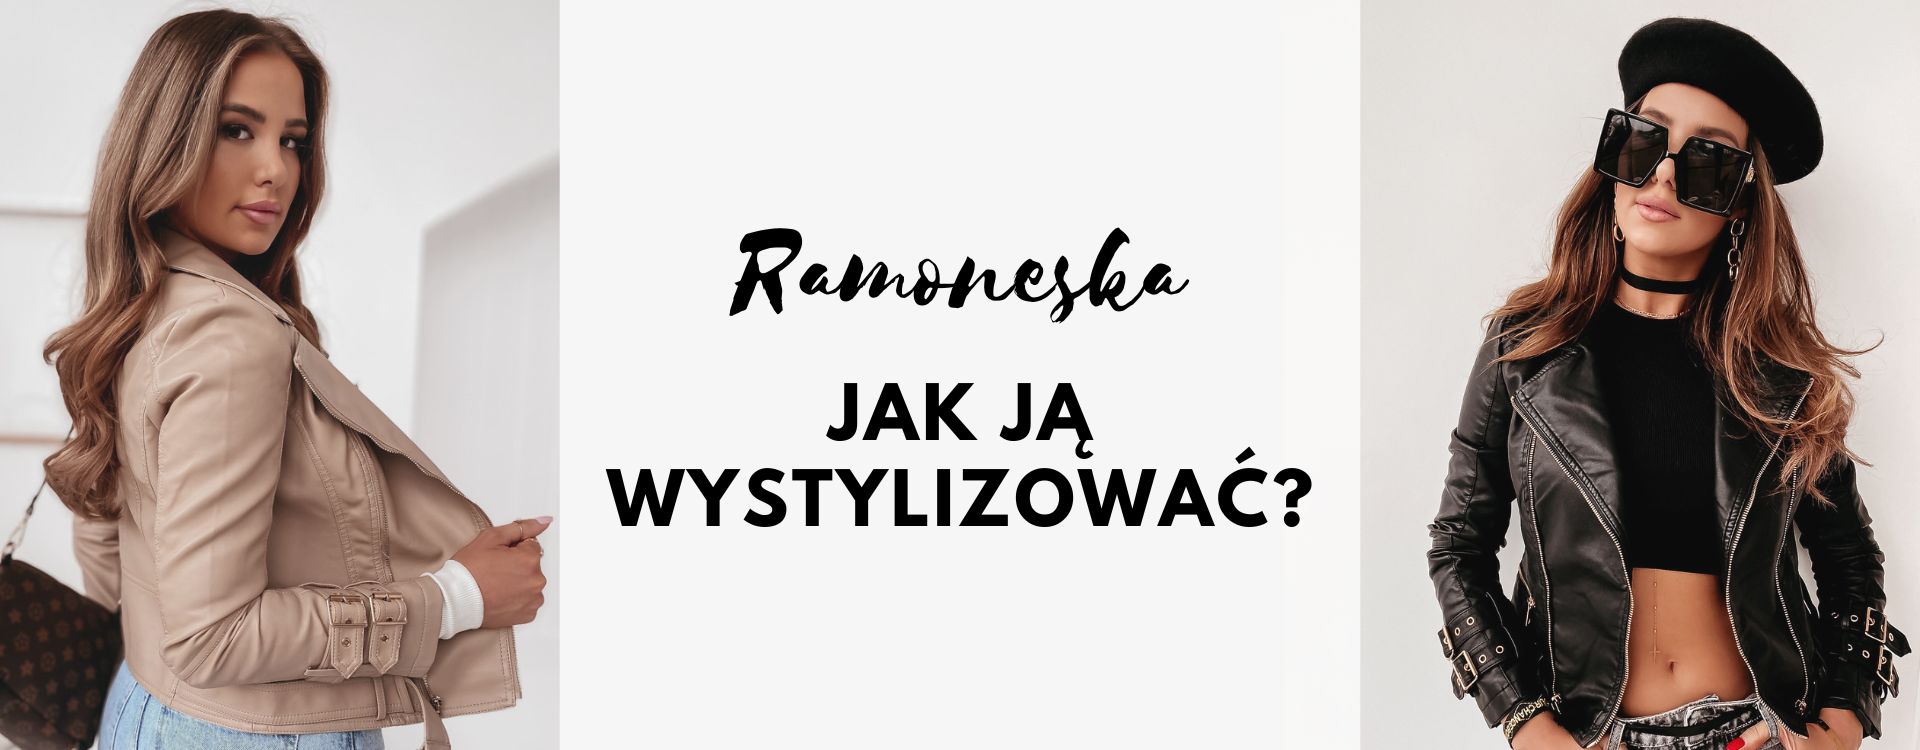 Ramoneska - jak ją wystylizować?